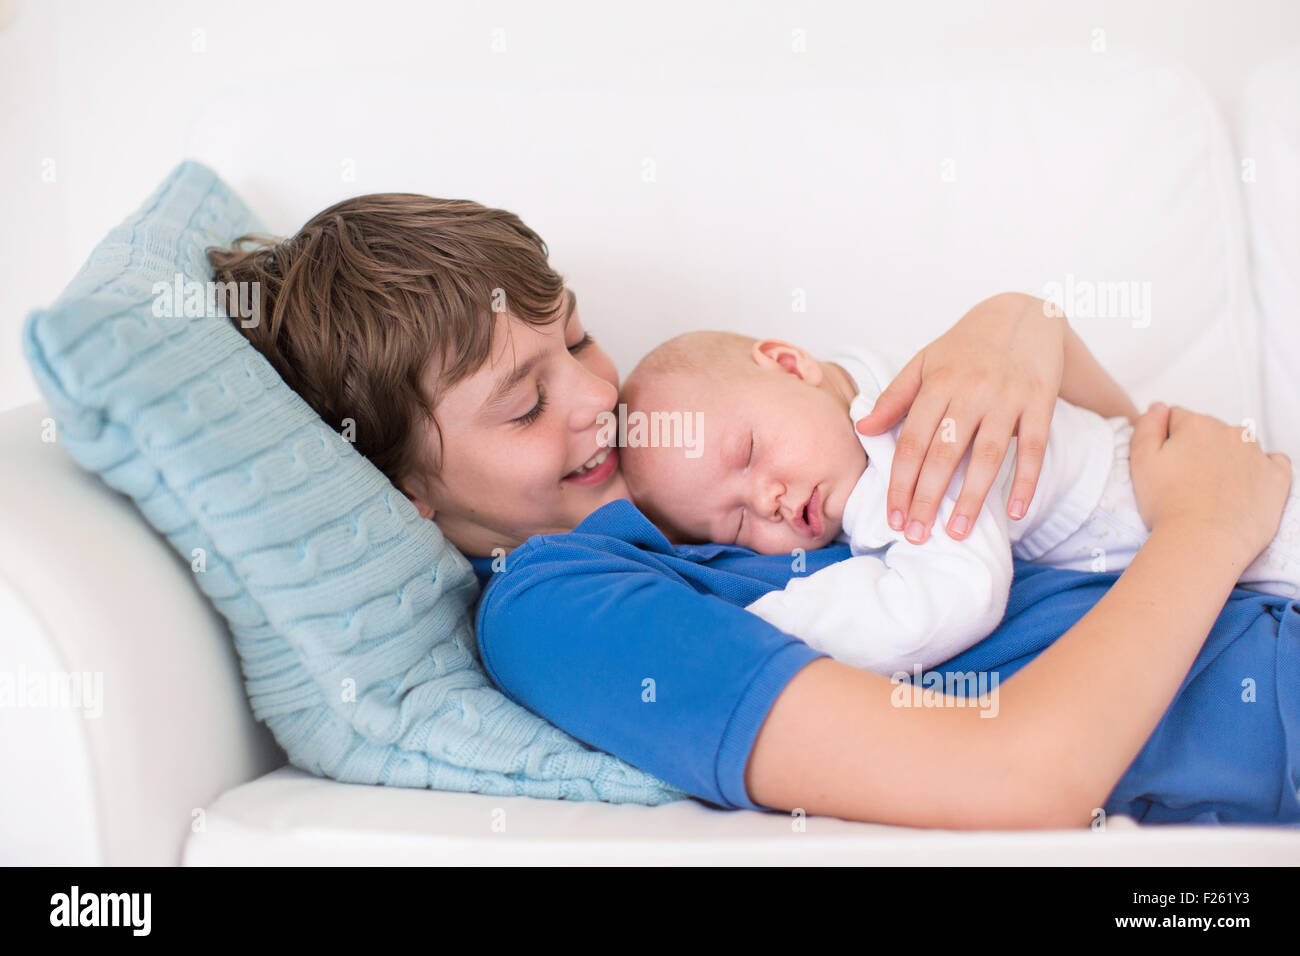 Felice di ridere boy tenendo la sua sleeping neonato fratello. Fratelli con grande differenza di età. Bambini che giocano sul lettino bianco Foto Stock